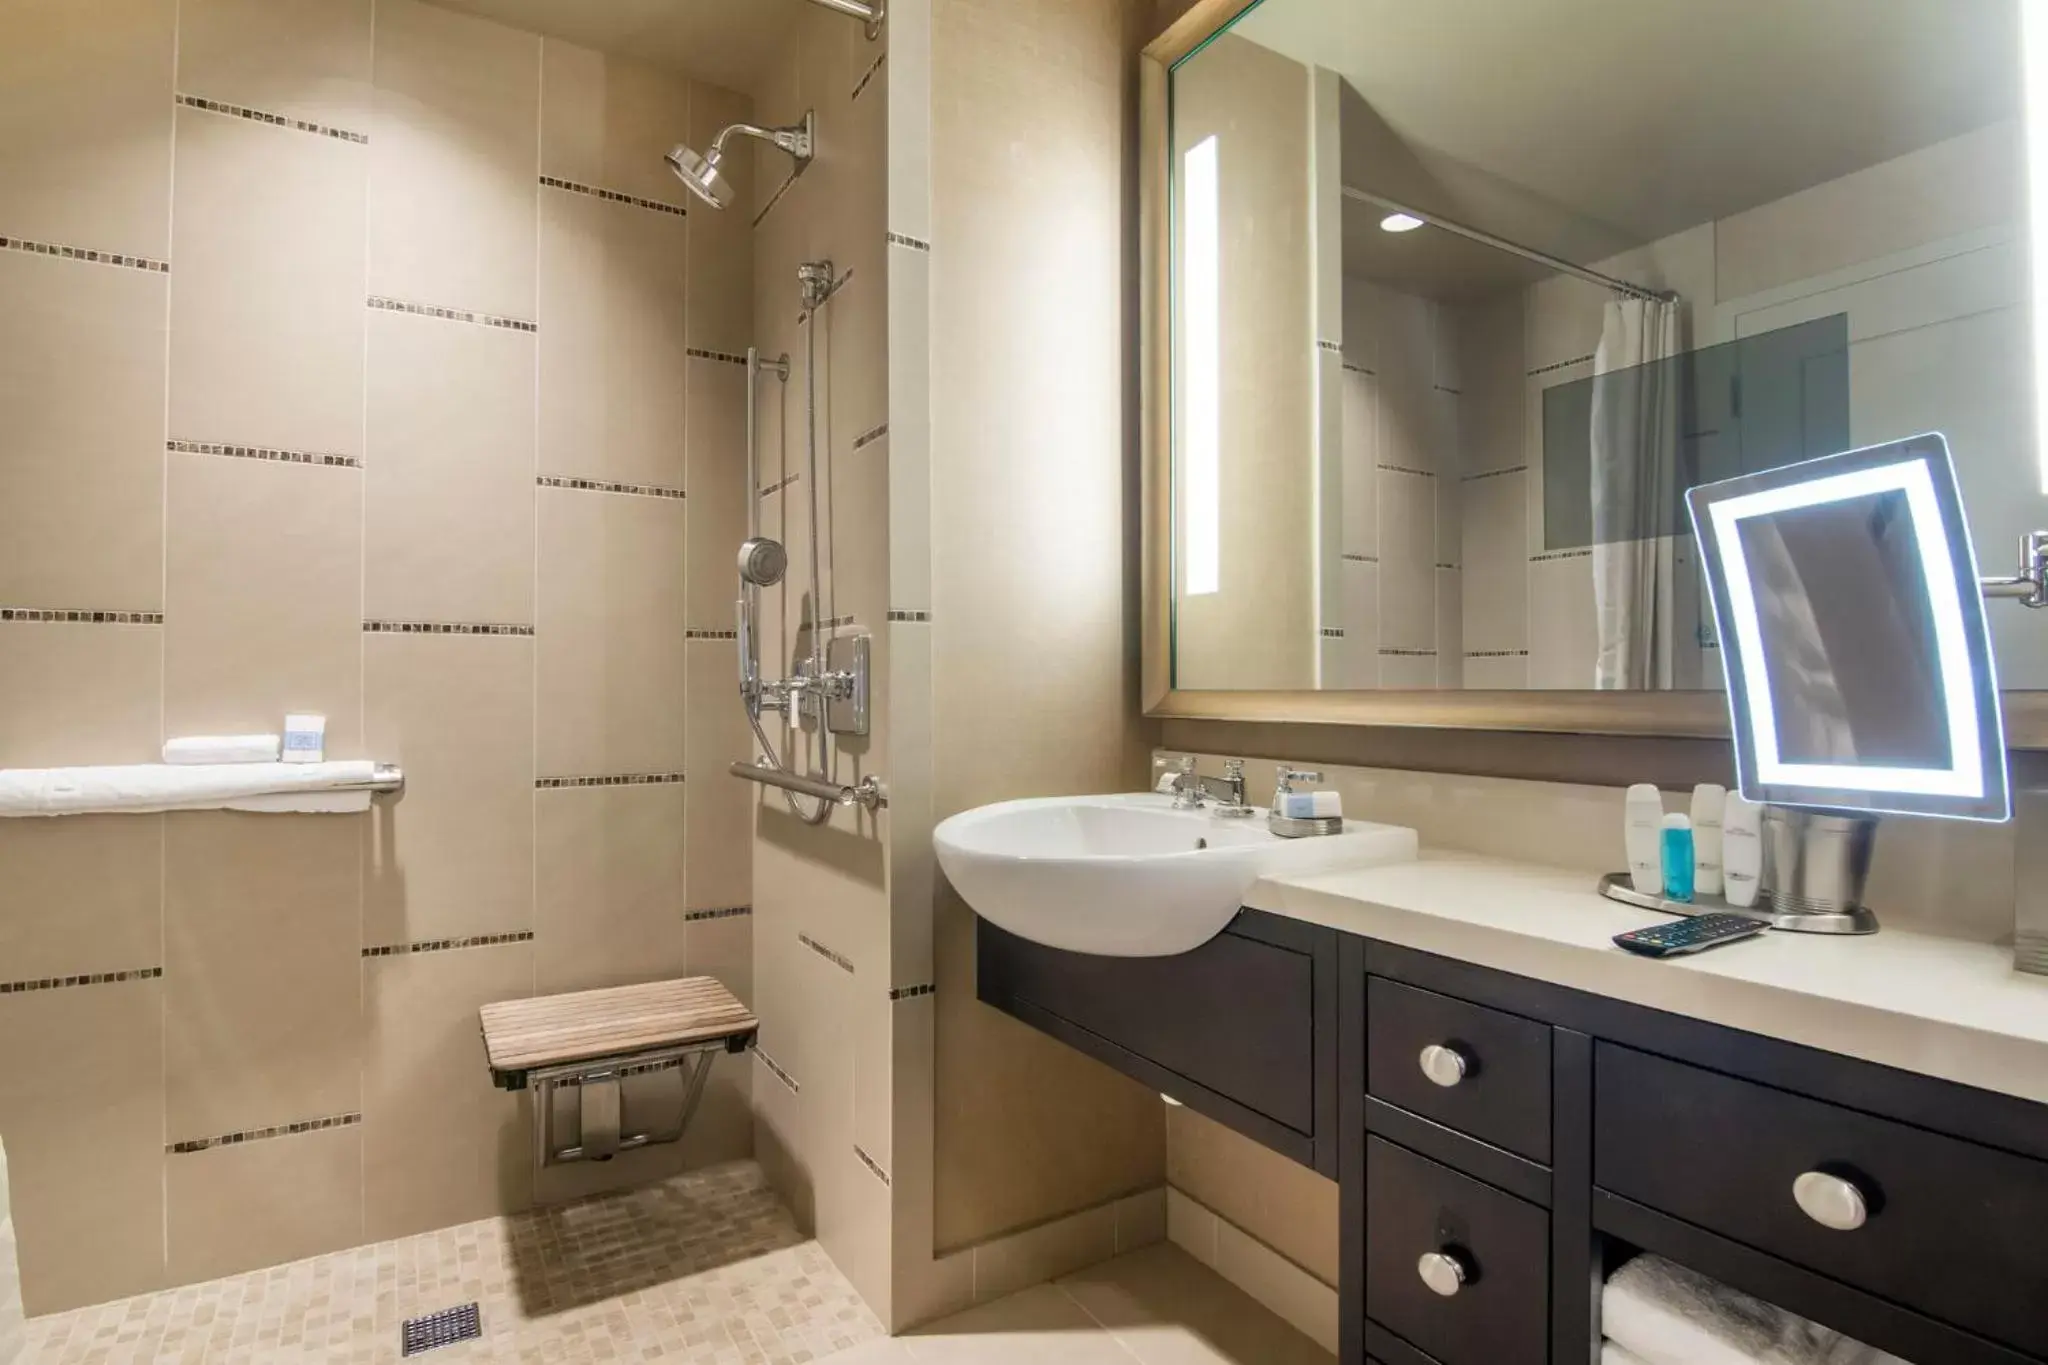 Photo of the whole room, Bathroom in Omni Dallas Hotel